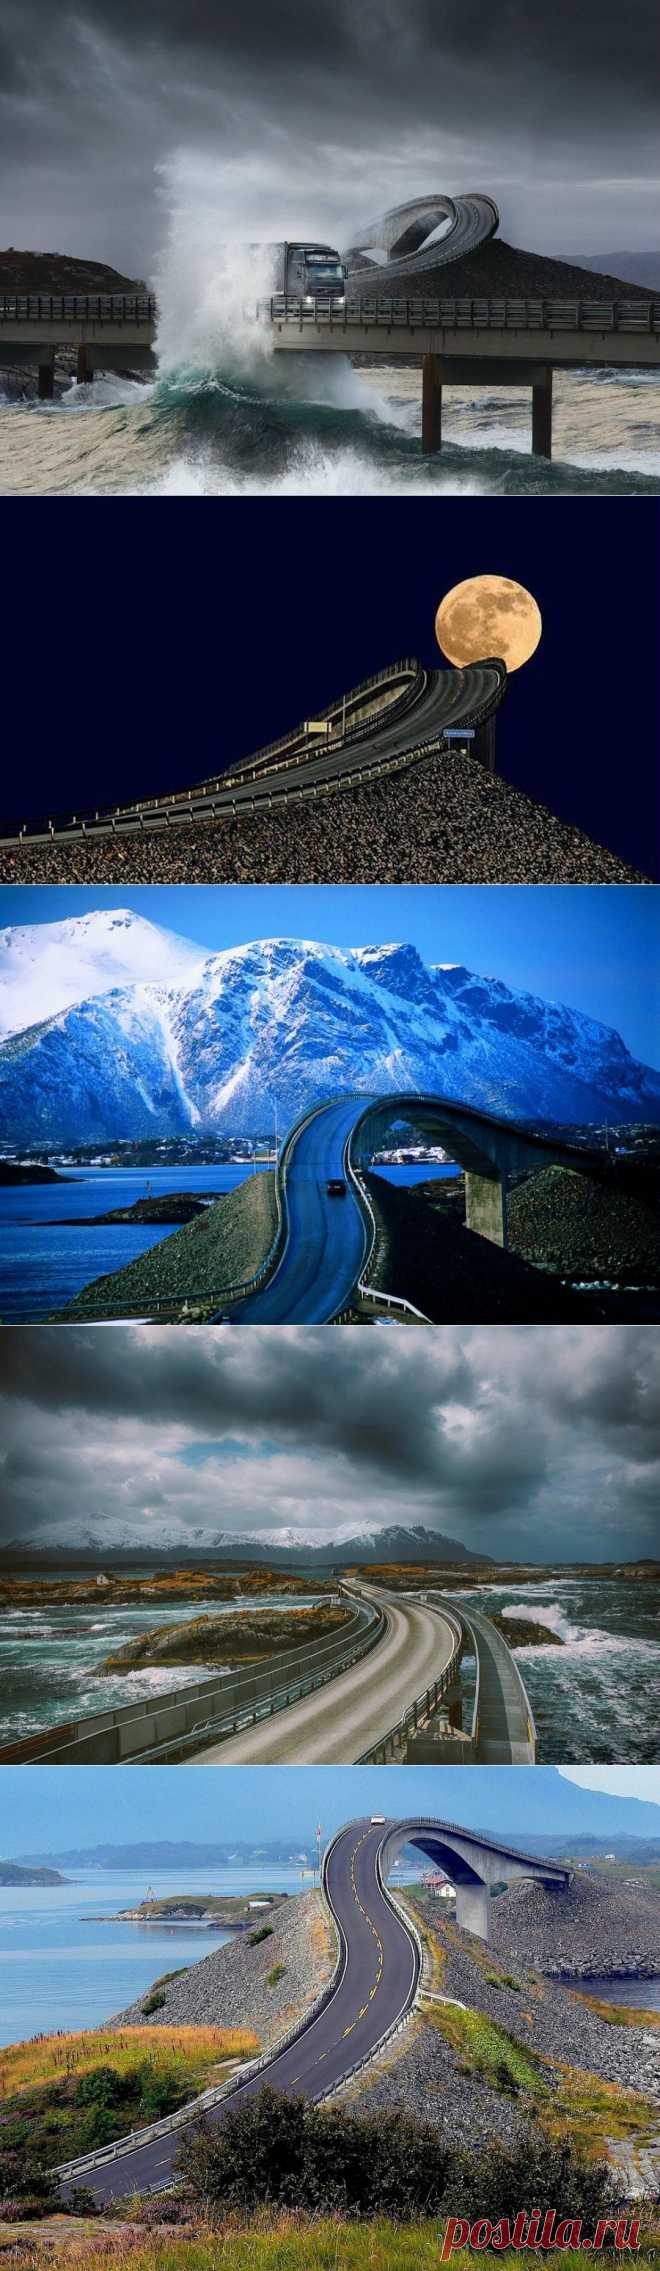 Атлантик Роуд: самая красивая дорога мира (Норвегия).